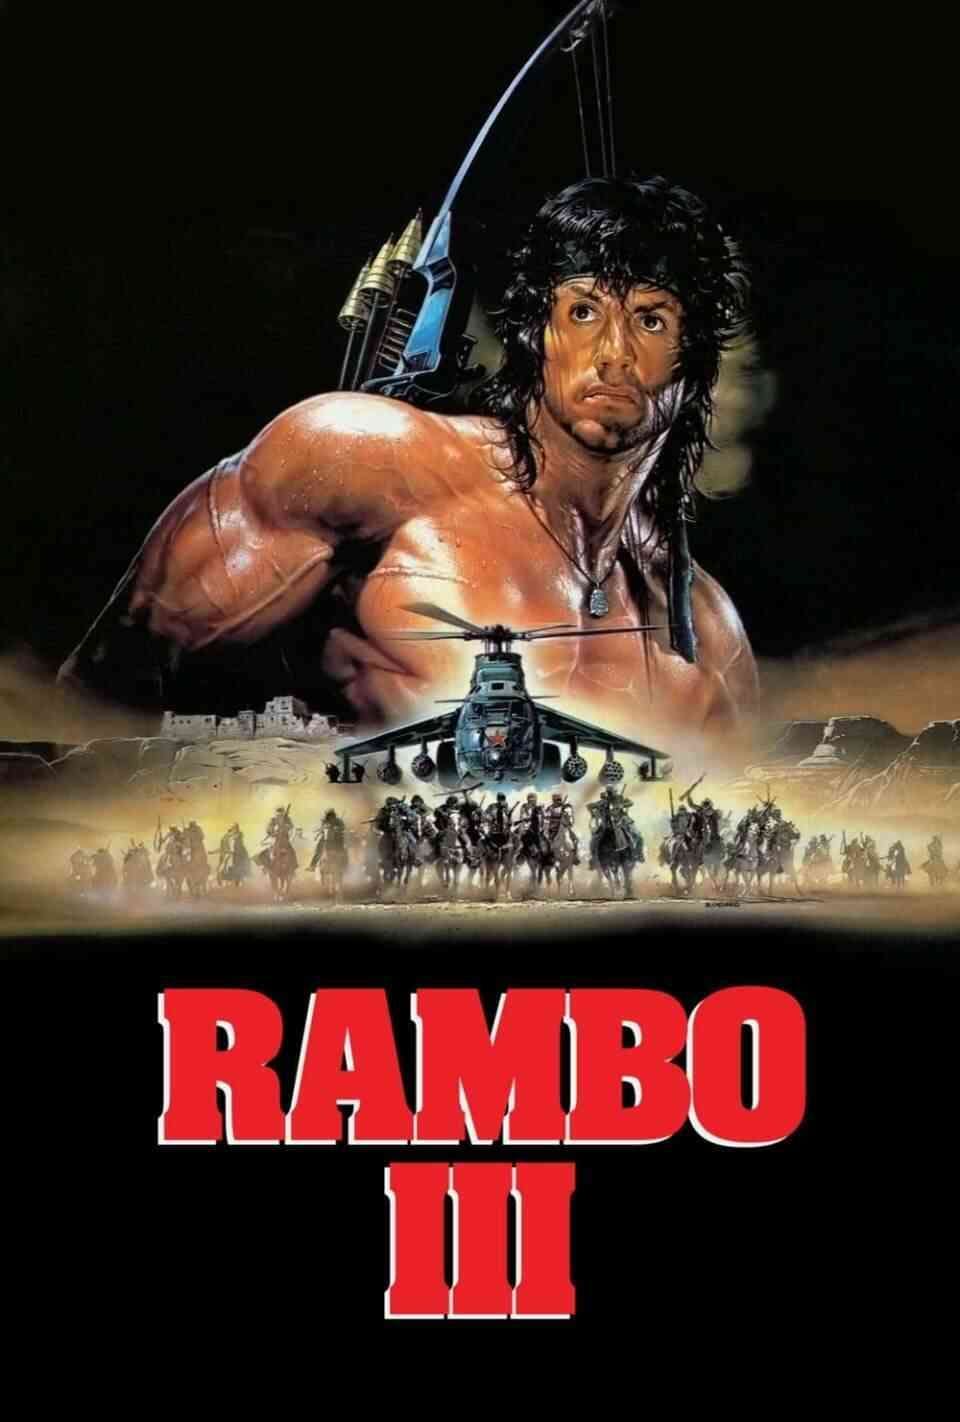 Read Rambo III screenplay (poster)